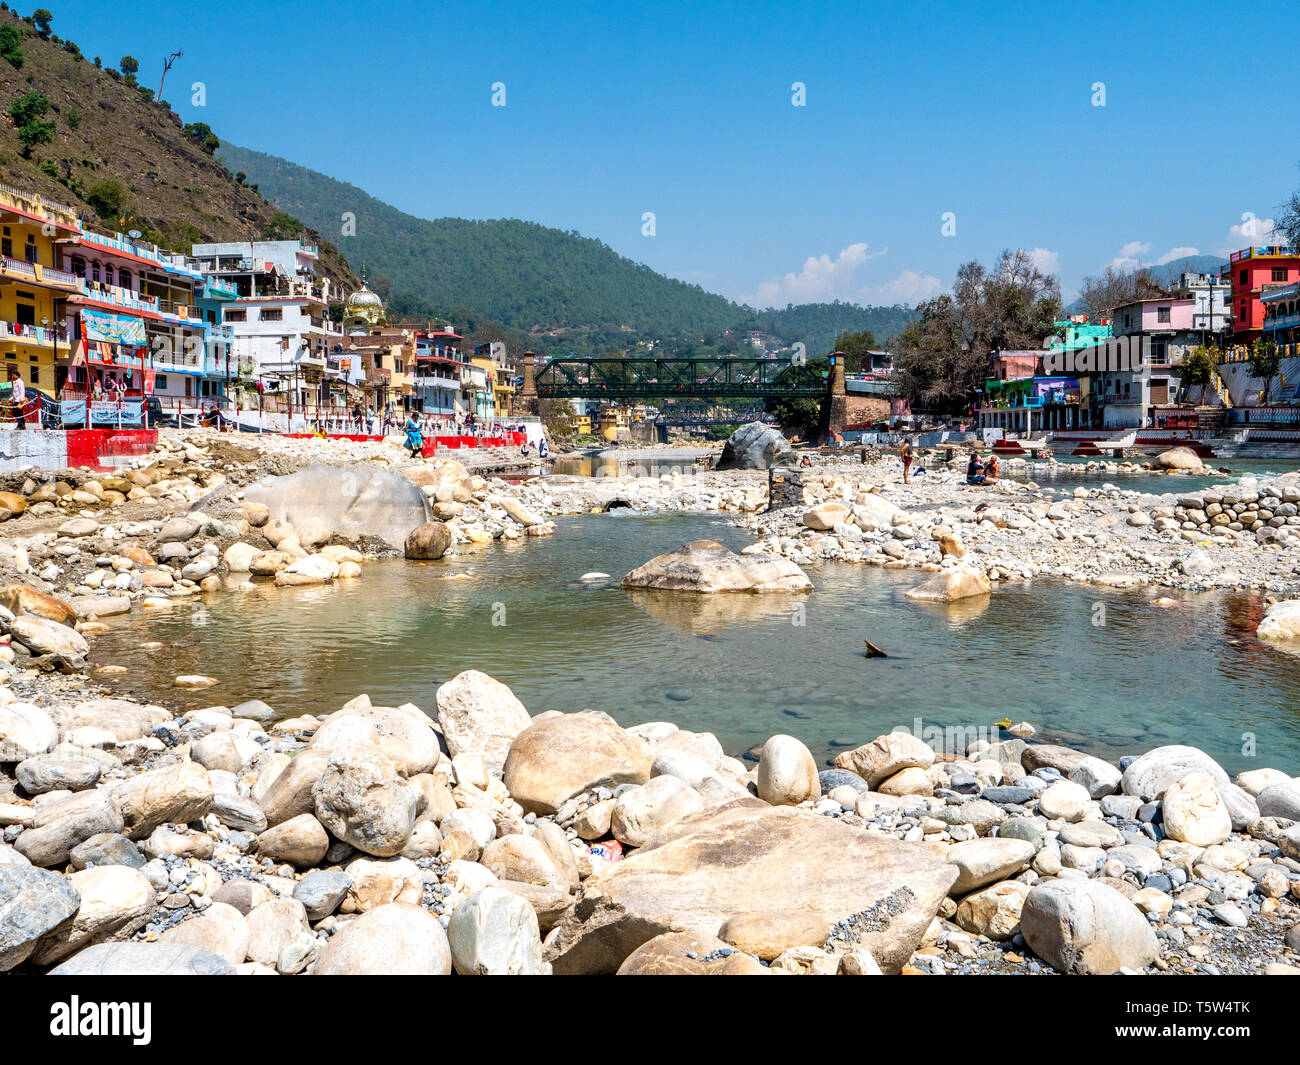 La ville de] dans l'état d'Uttarakhand dans le Nord de l'Inde à la confluence de la rivière Saryu et Gomati Banque D'Images